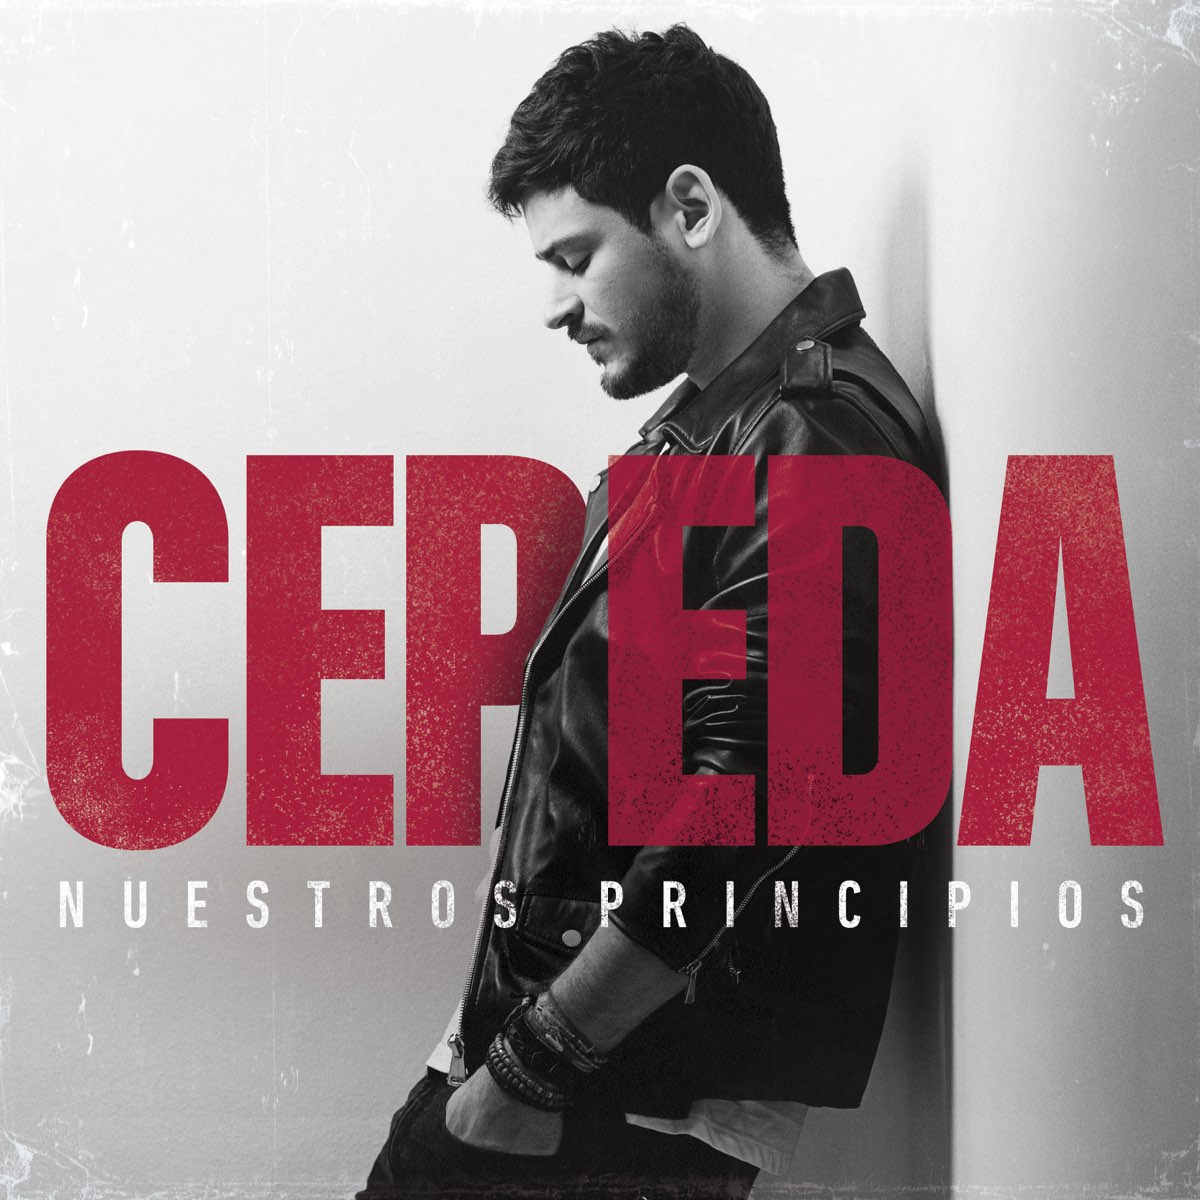 ‎Nuestros Principios - Album by Cepeda - Apple Music